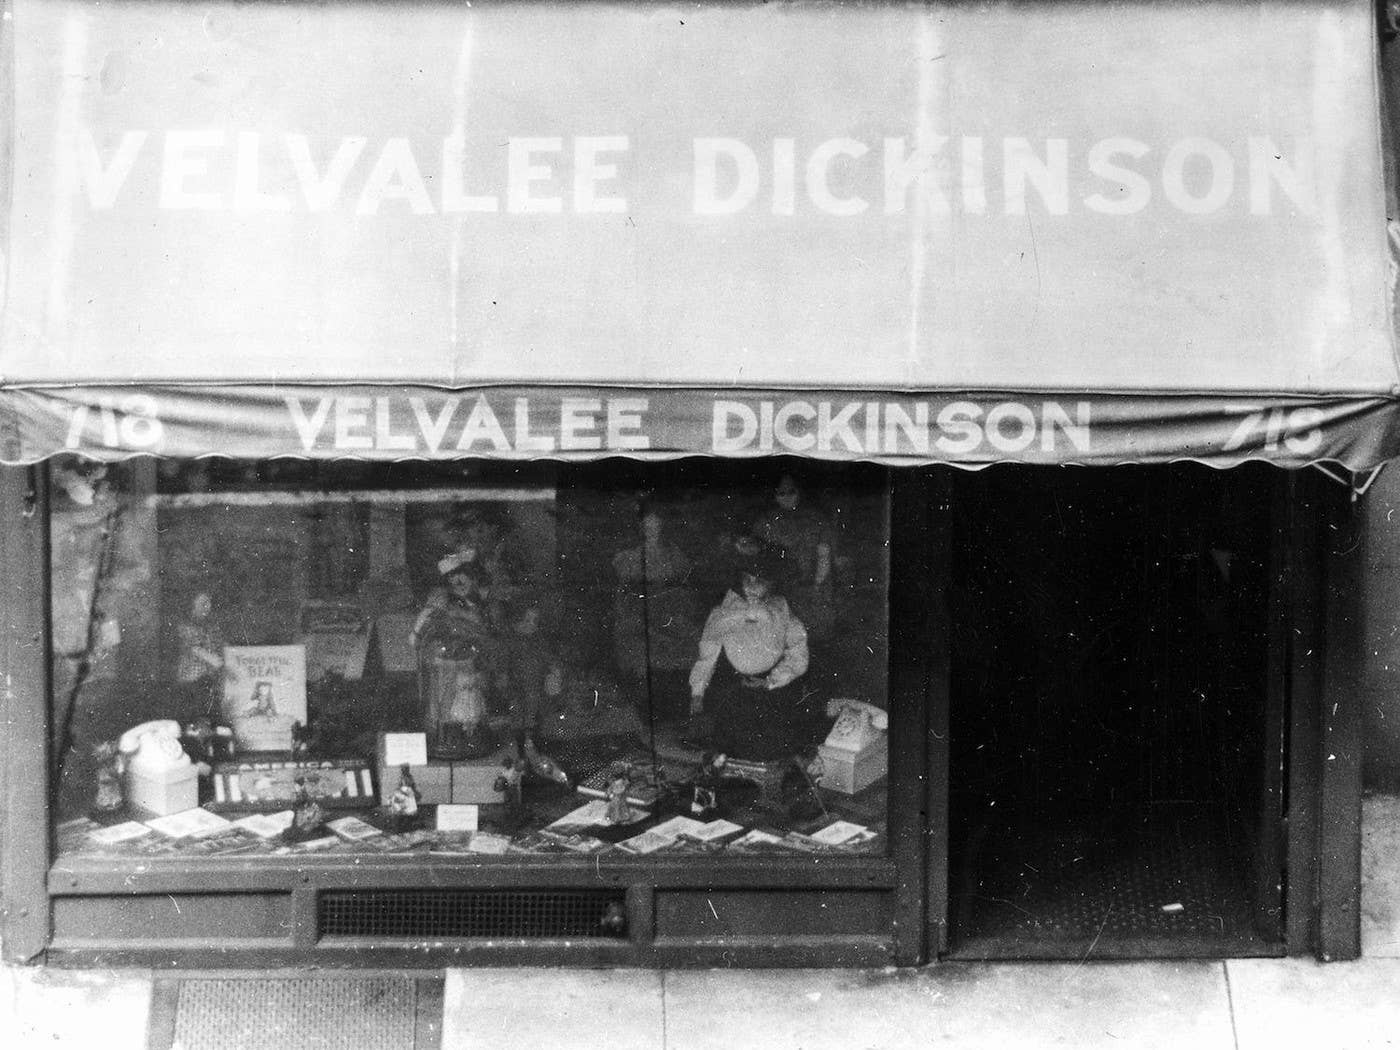 Velvalee Dickinson's doll shop. Image courtesy of FBI.gov https://www.fbi.gov/history/famous-cases/velvalee-dickinson-the-doll-woman